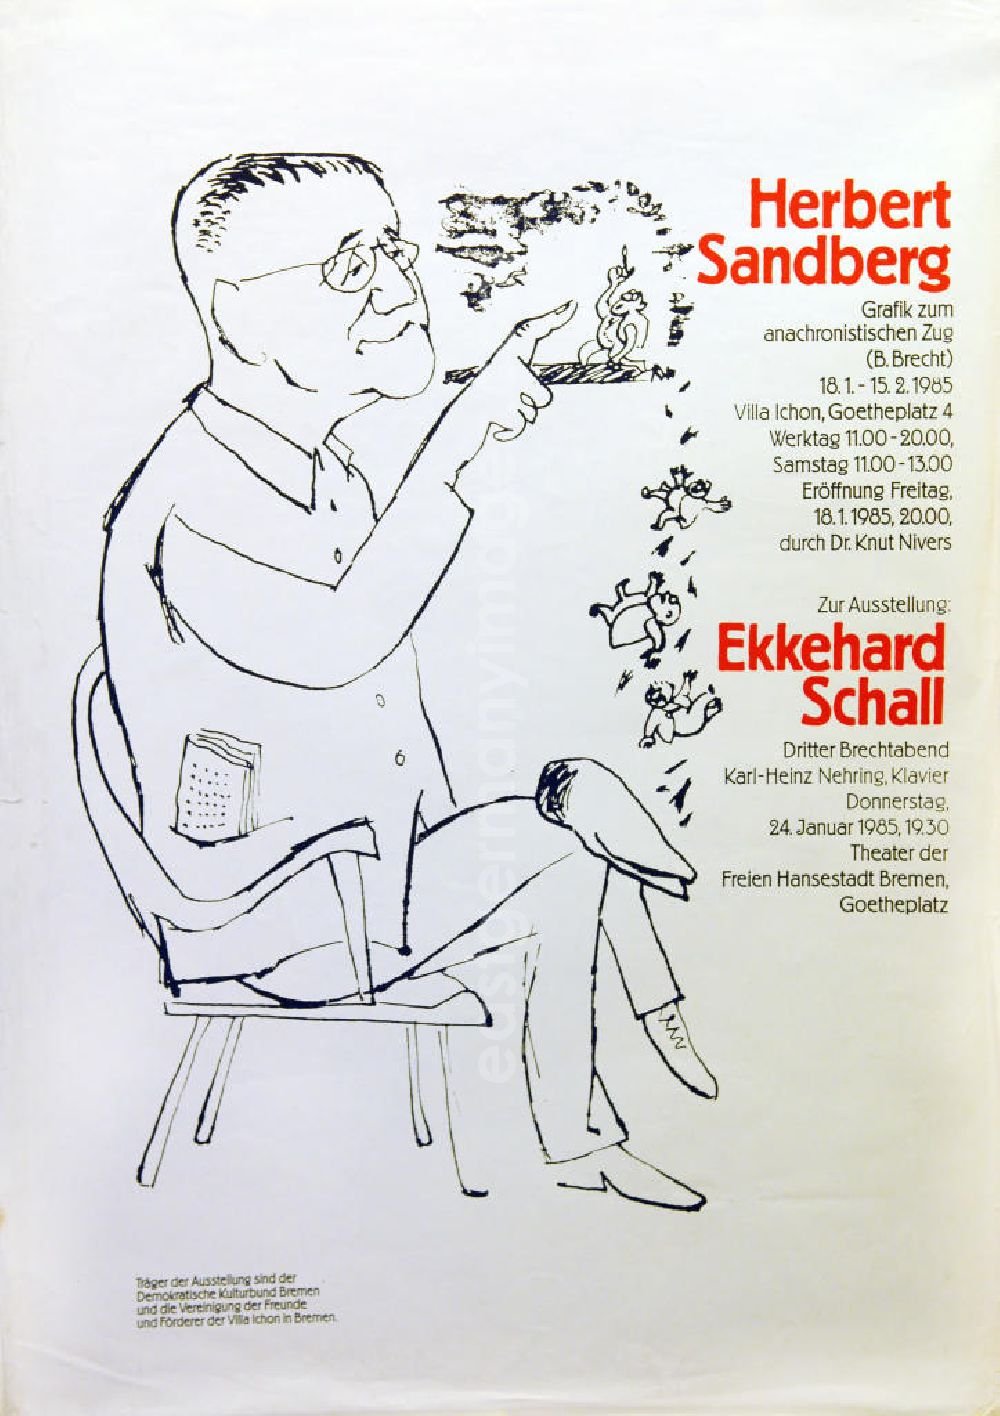 Berlin: Plakat der Ausstellung Herbert Sandberg, Grafik zum anachronistischen Zug (B. Brecht) vom 18.01.-15.02.1985 Villa Ichon, 63,0x88,